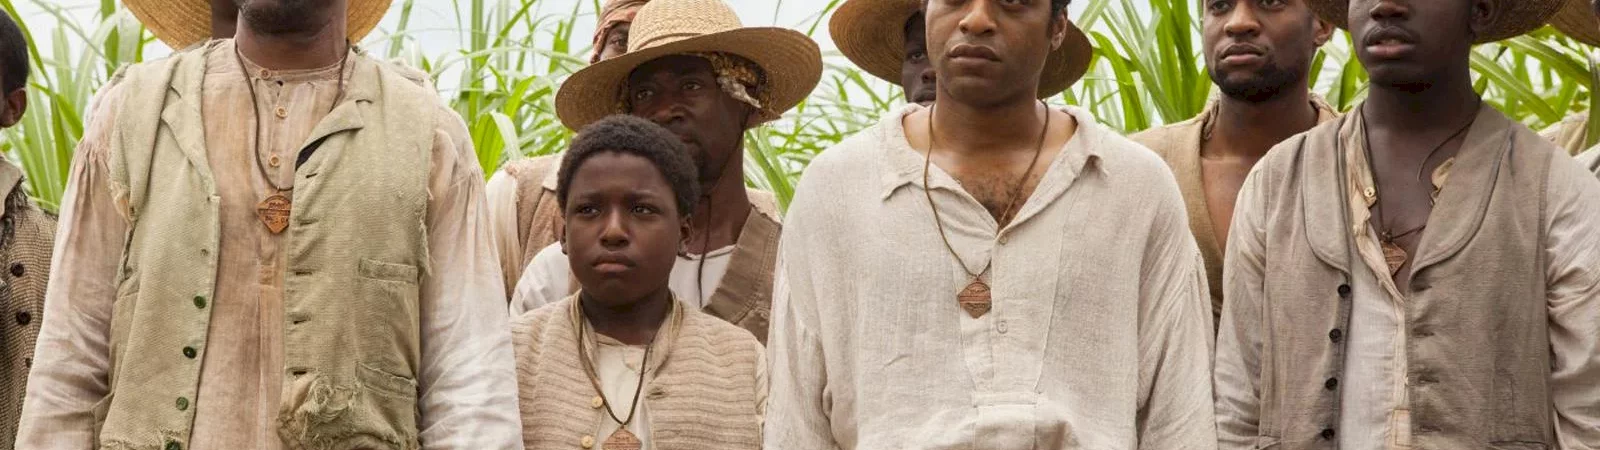 10 films sur l'esclavage